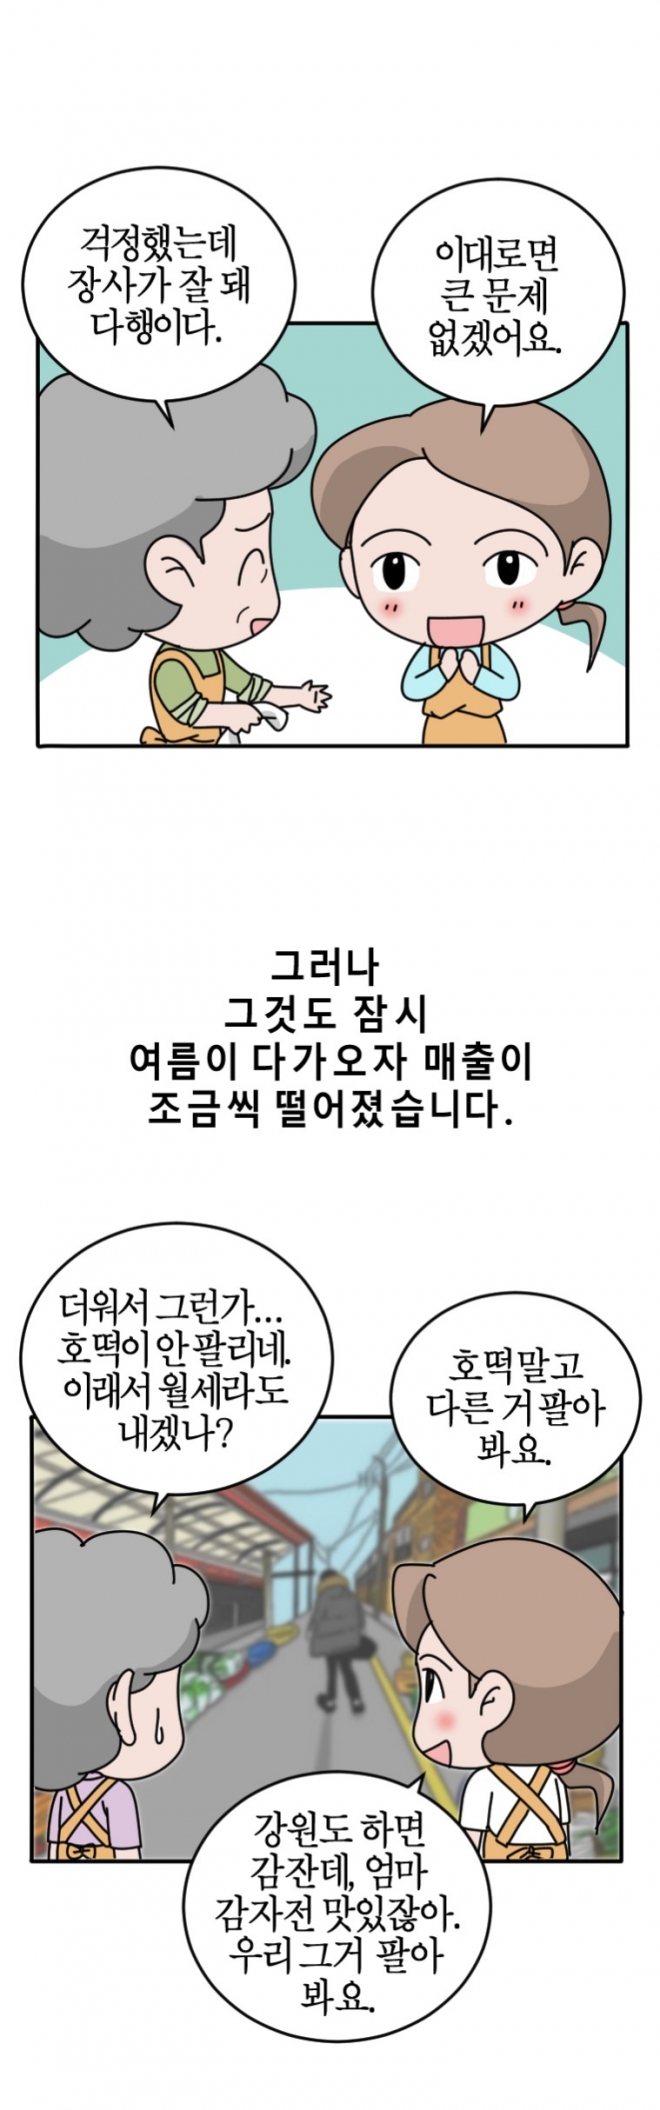 박지선씨의 이야기를 그린 웹툰 자몽 작가 제공